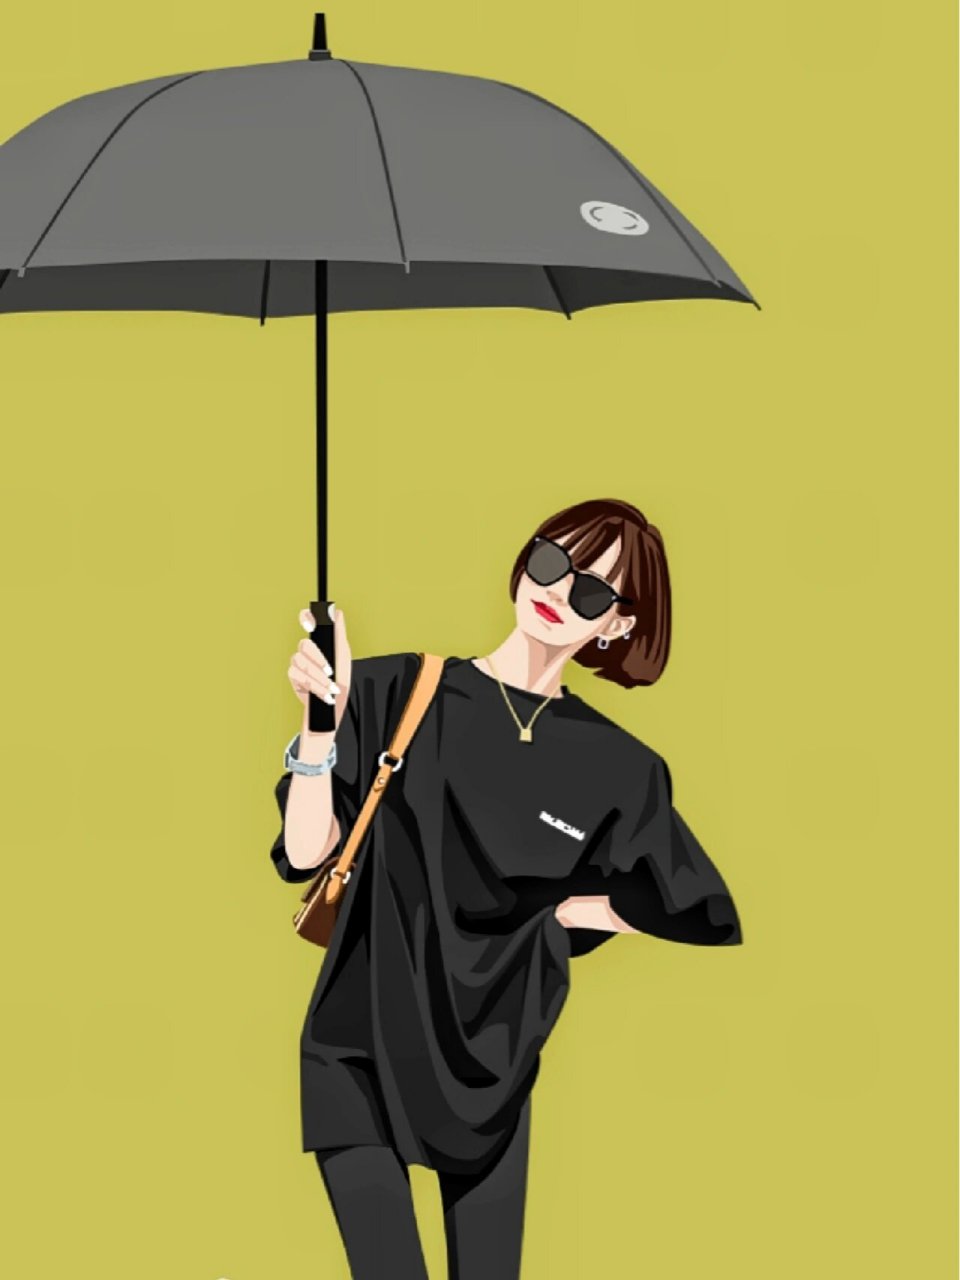 一个人撑伞的图片卡通图片